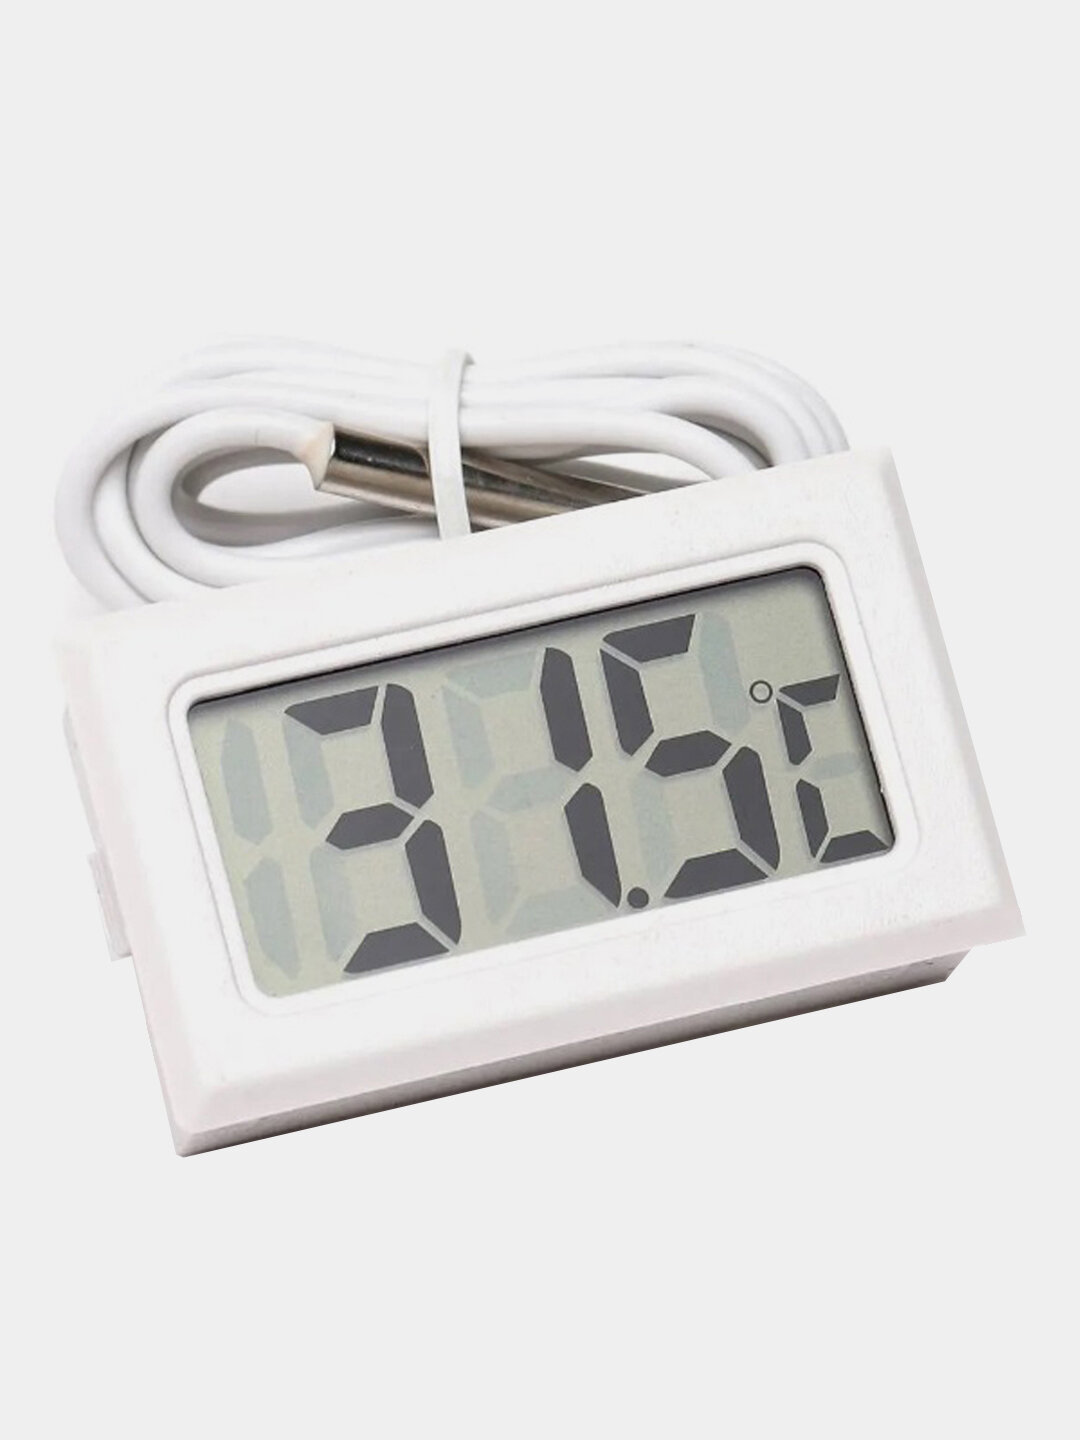 Цифровой электронный термометр с выносным датчиком, датчик температуры Цвет Белый